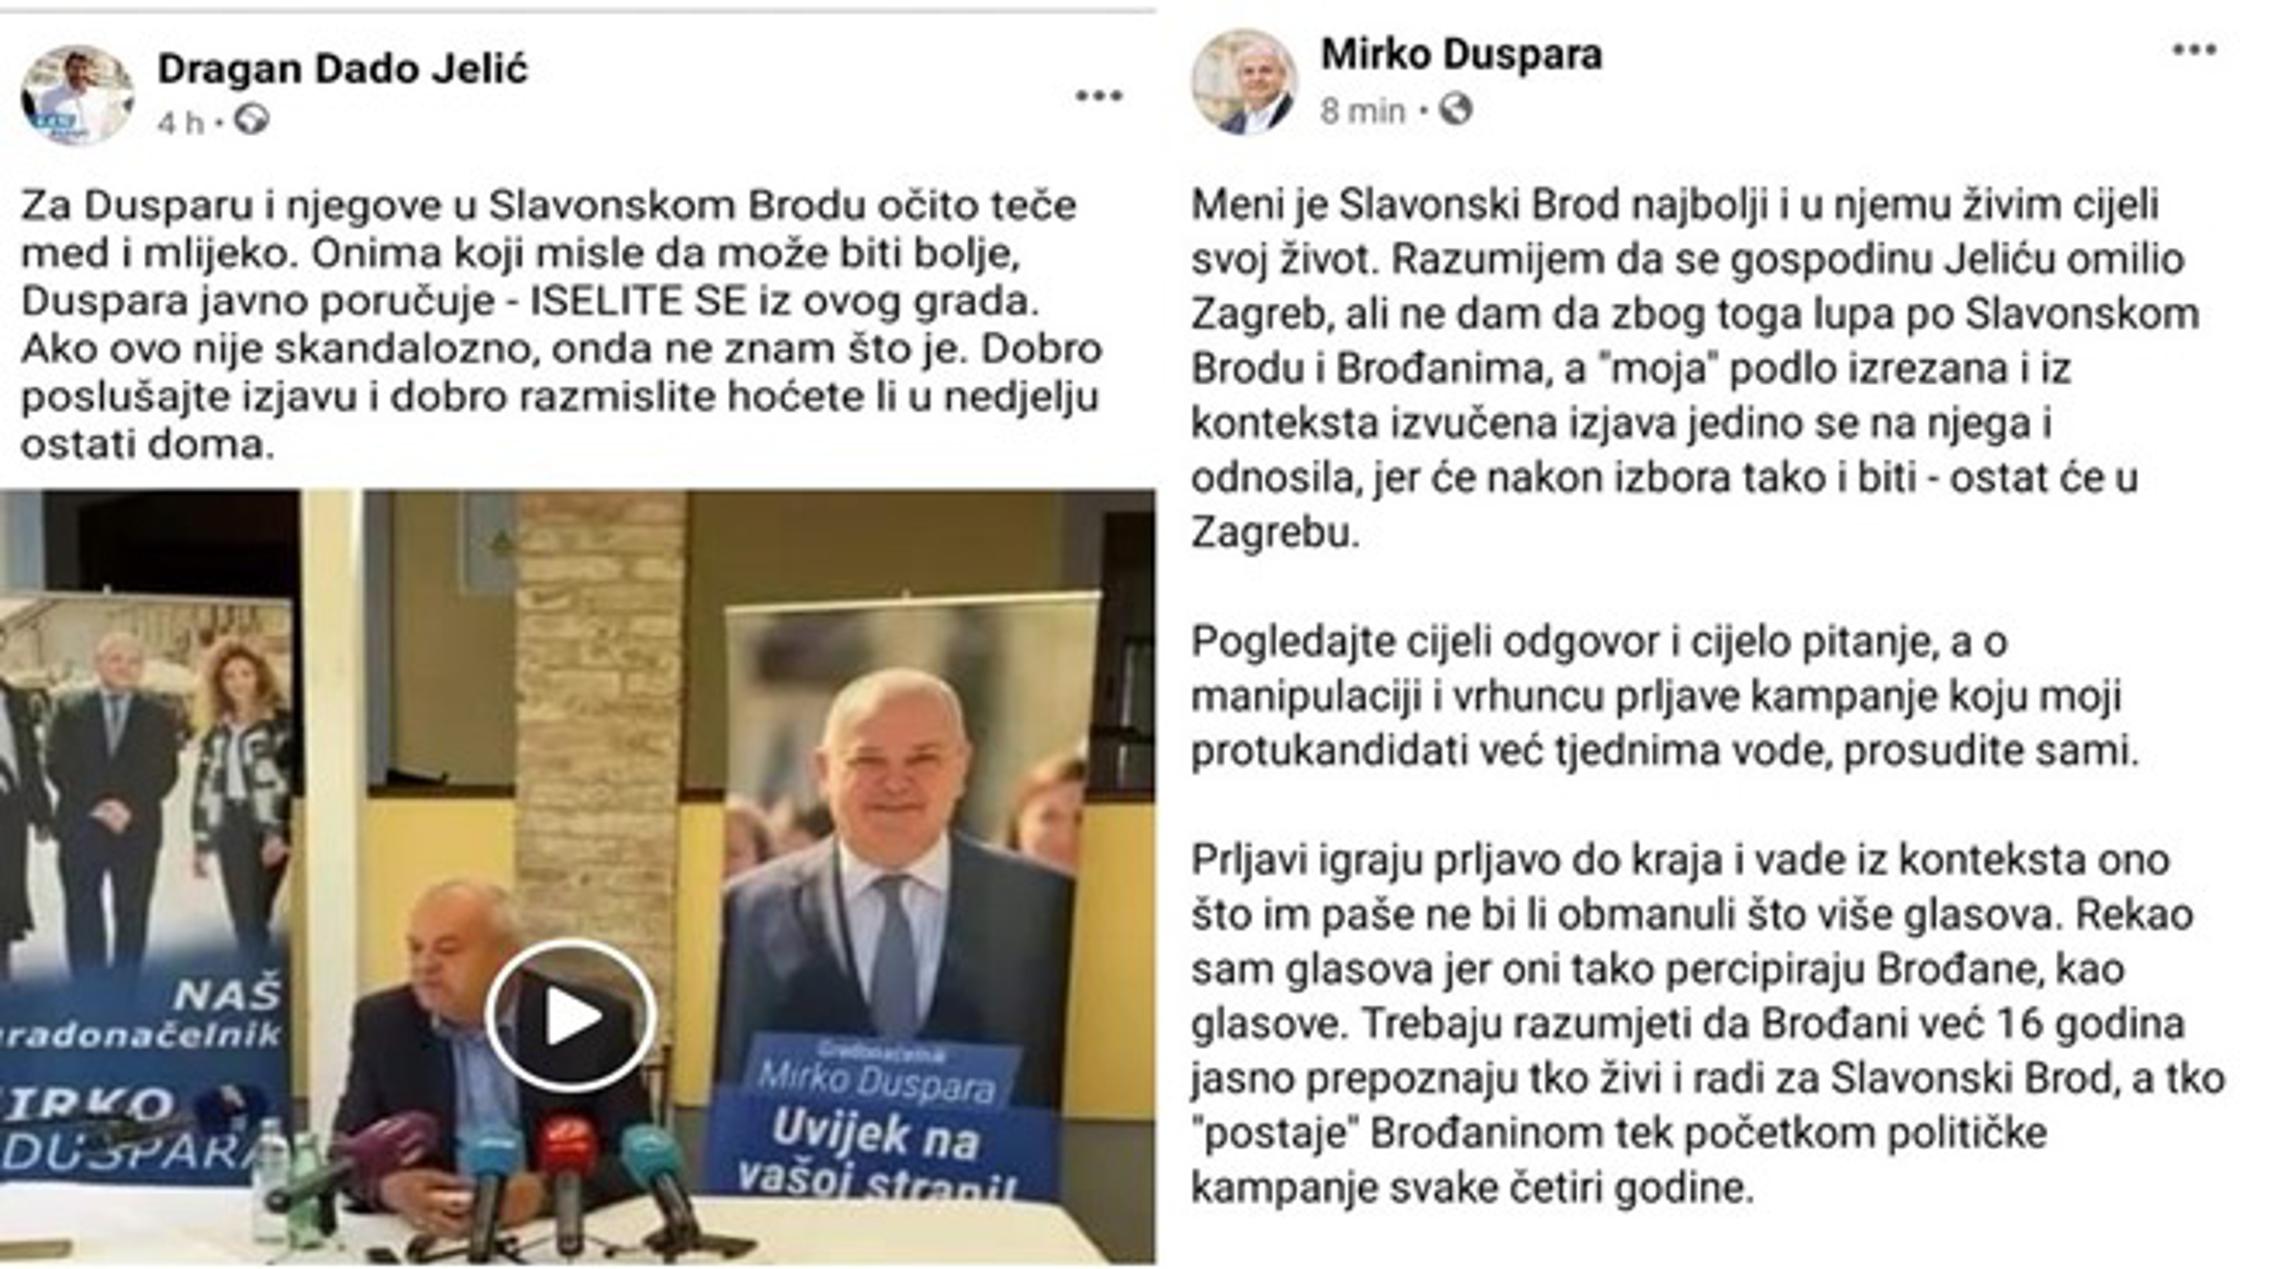 Komentar Dragana Jelića i odgovor Mirka Duspare